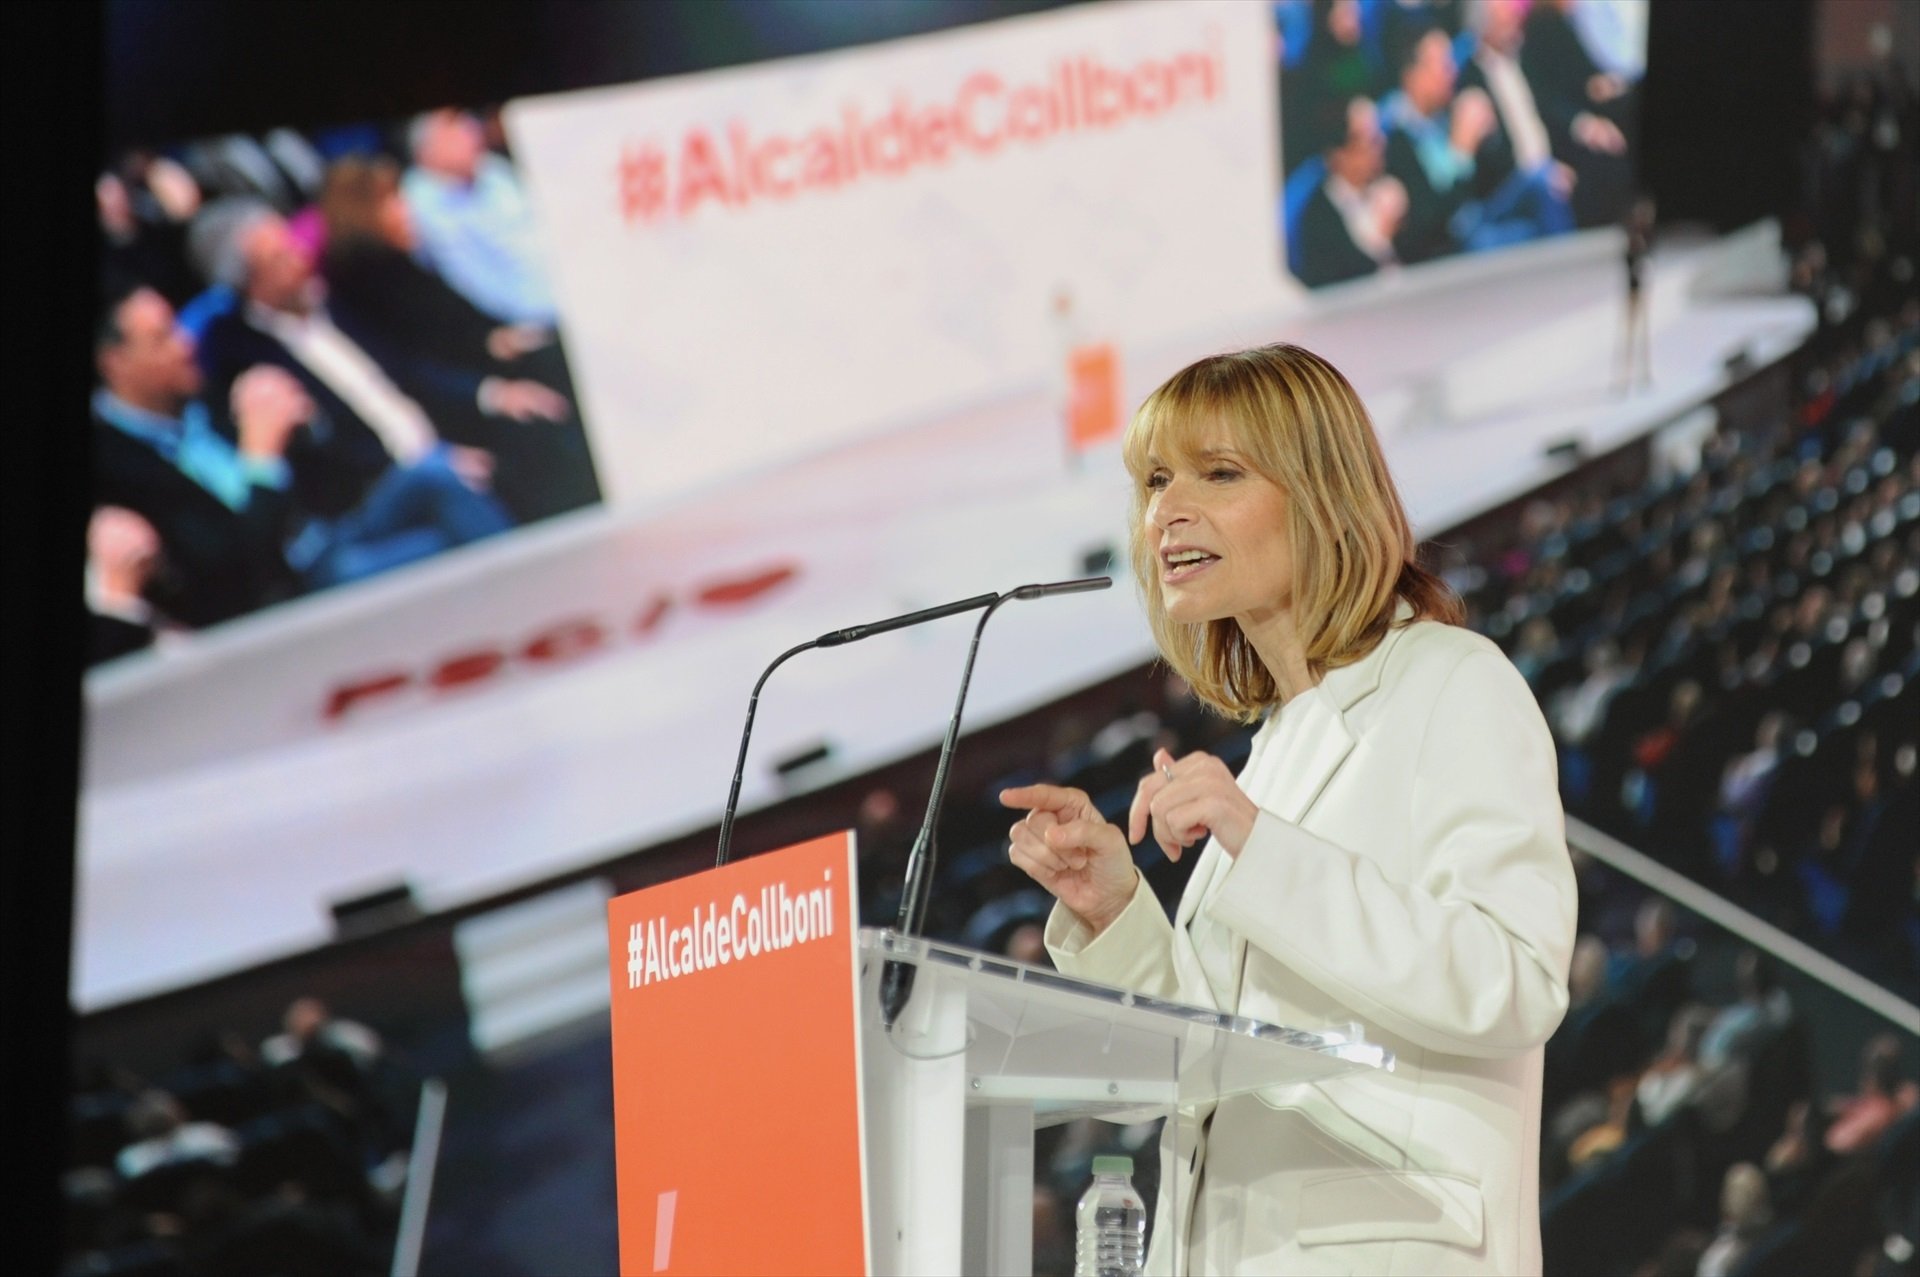 El PSC propondrá a Lluïsa Moret, alcaldesa de Sant Boi, como presidenta de la Diputació de Barcelona